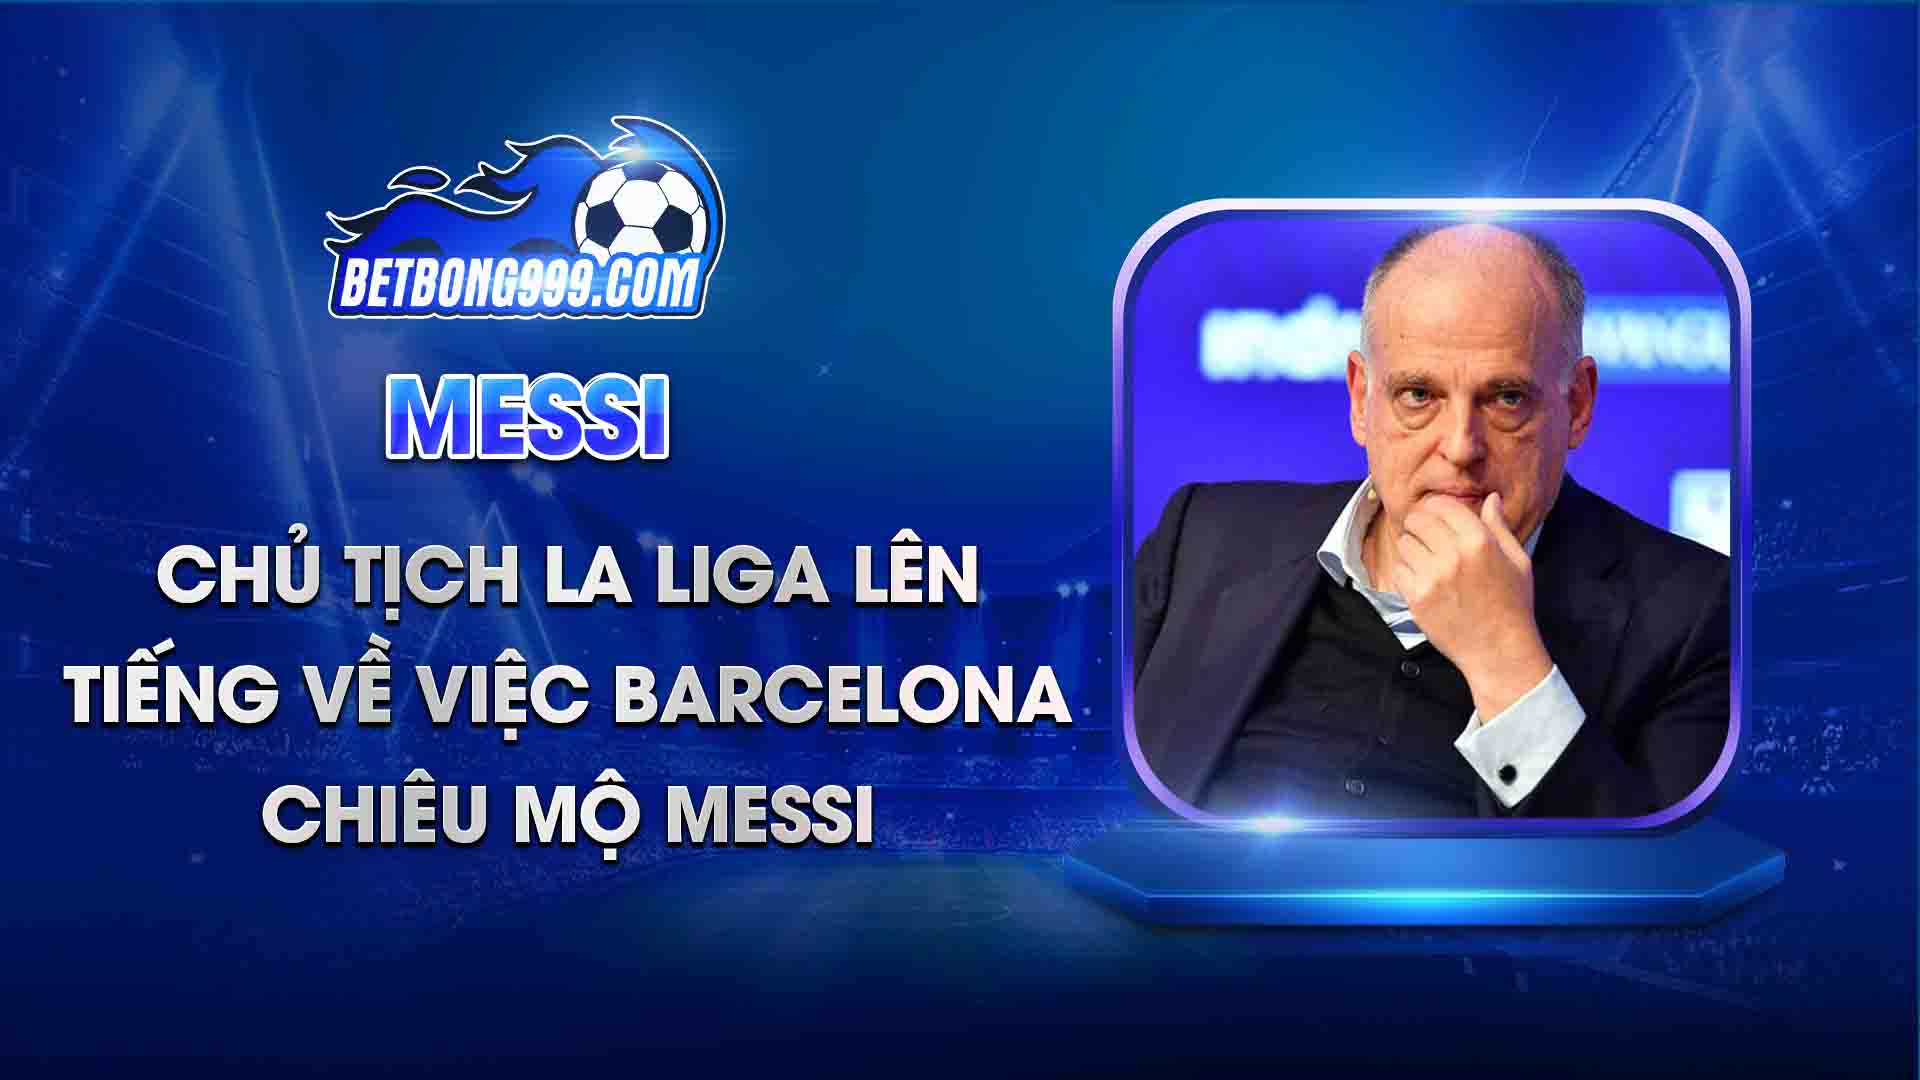 Chủ tịch La Liga lên tiếng về việc Barcelona chiêu mộ Messi